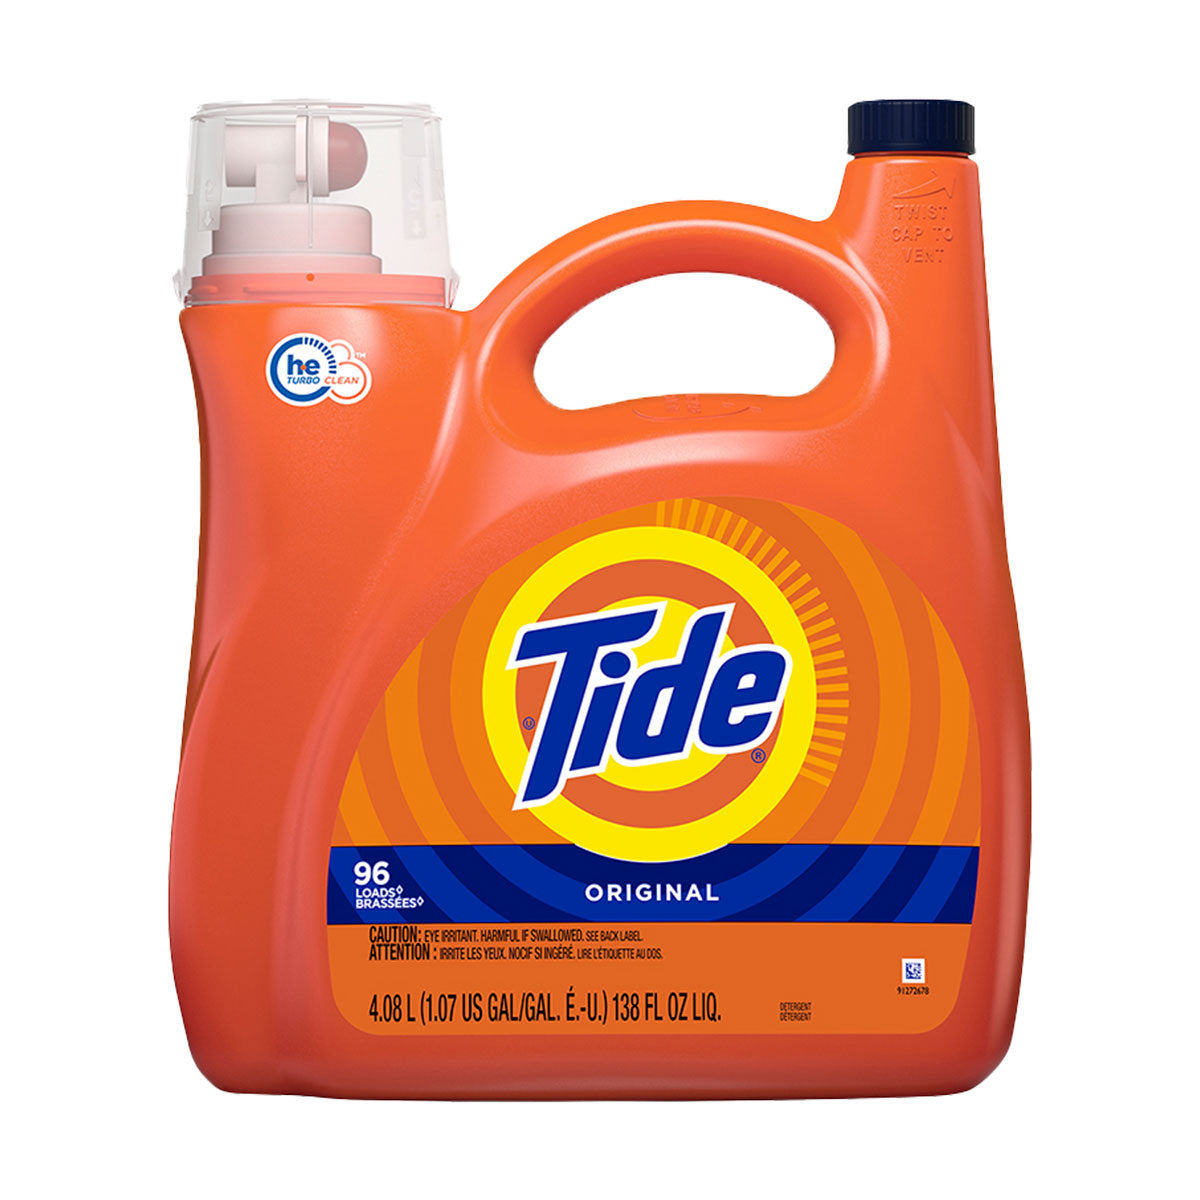 Detergente líquido concentrado para ropa Tide Original 4,08 lts 96 cargas